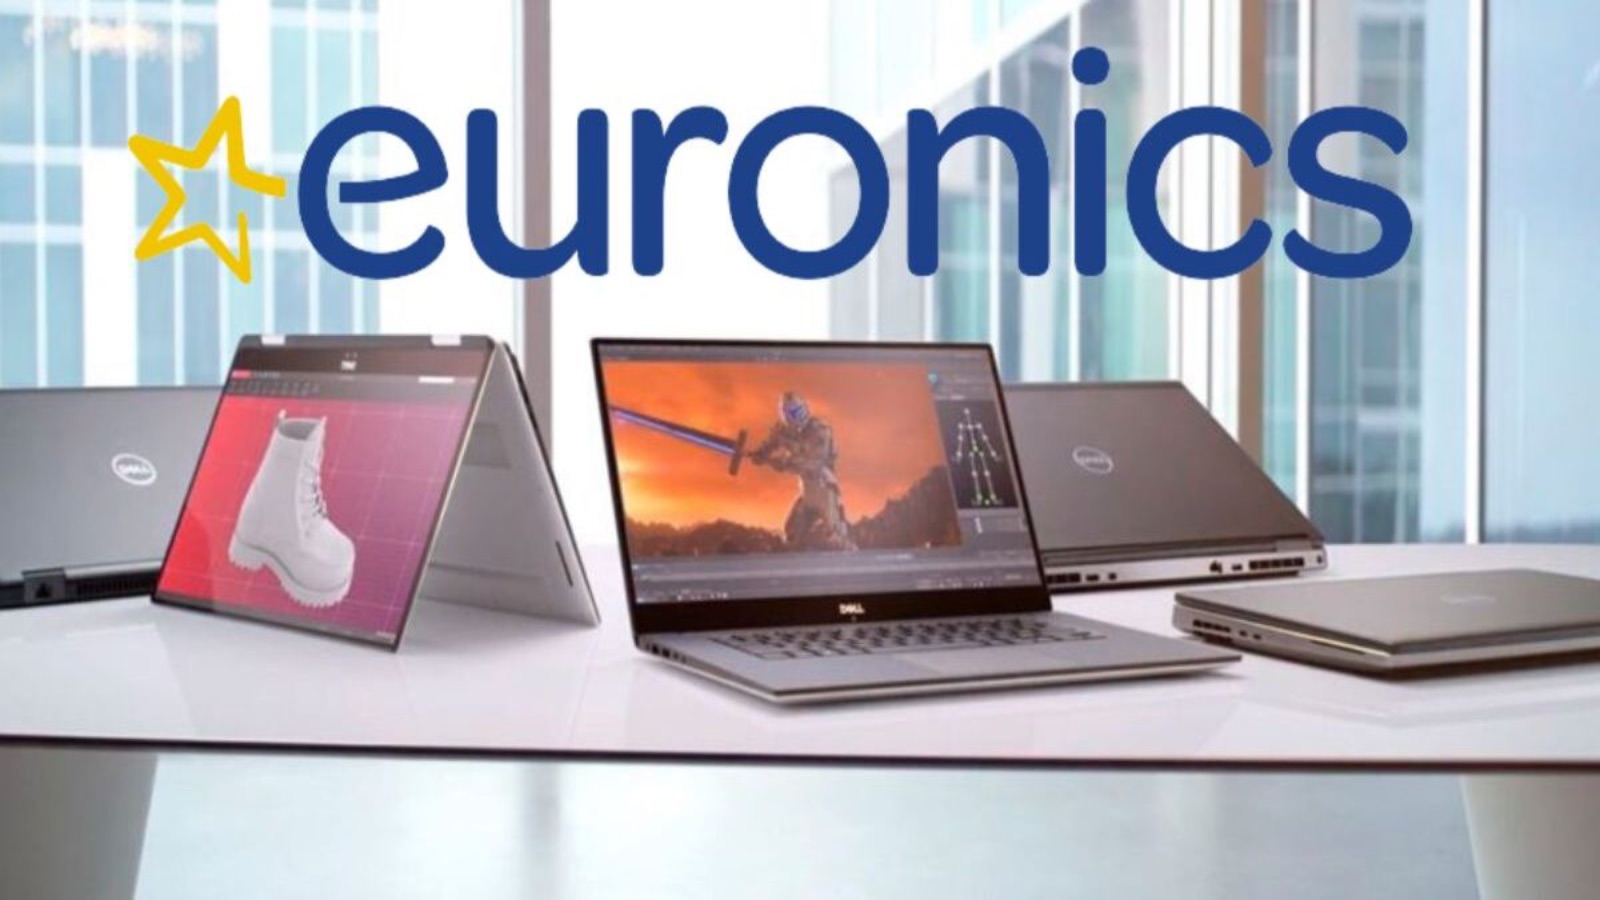 Euronics propone smartphone e PC che tutti stanno acquistando